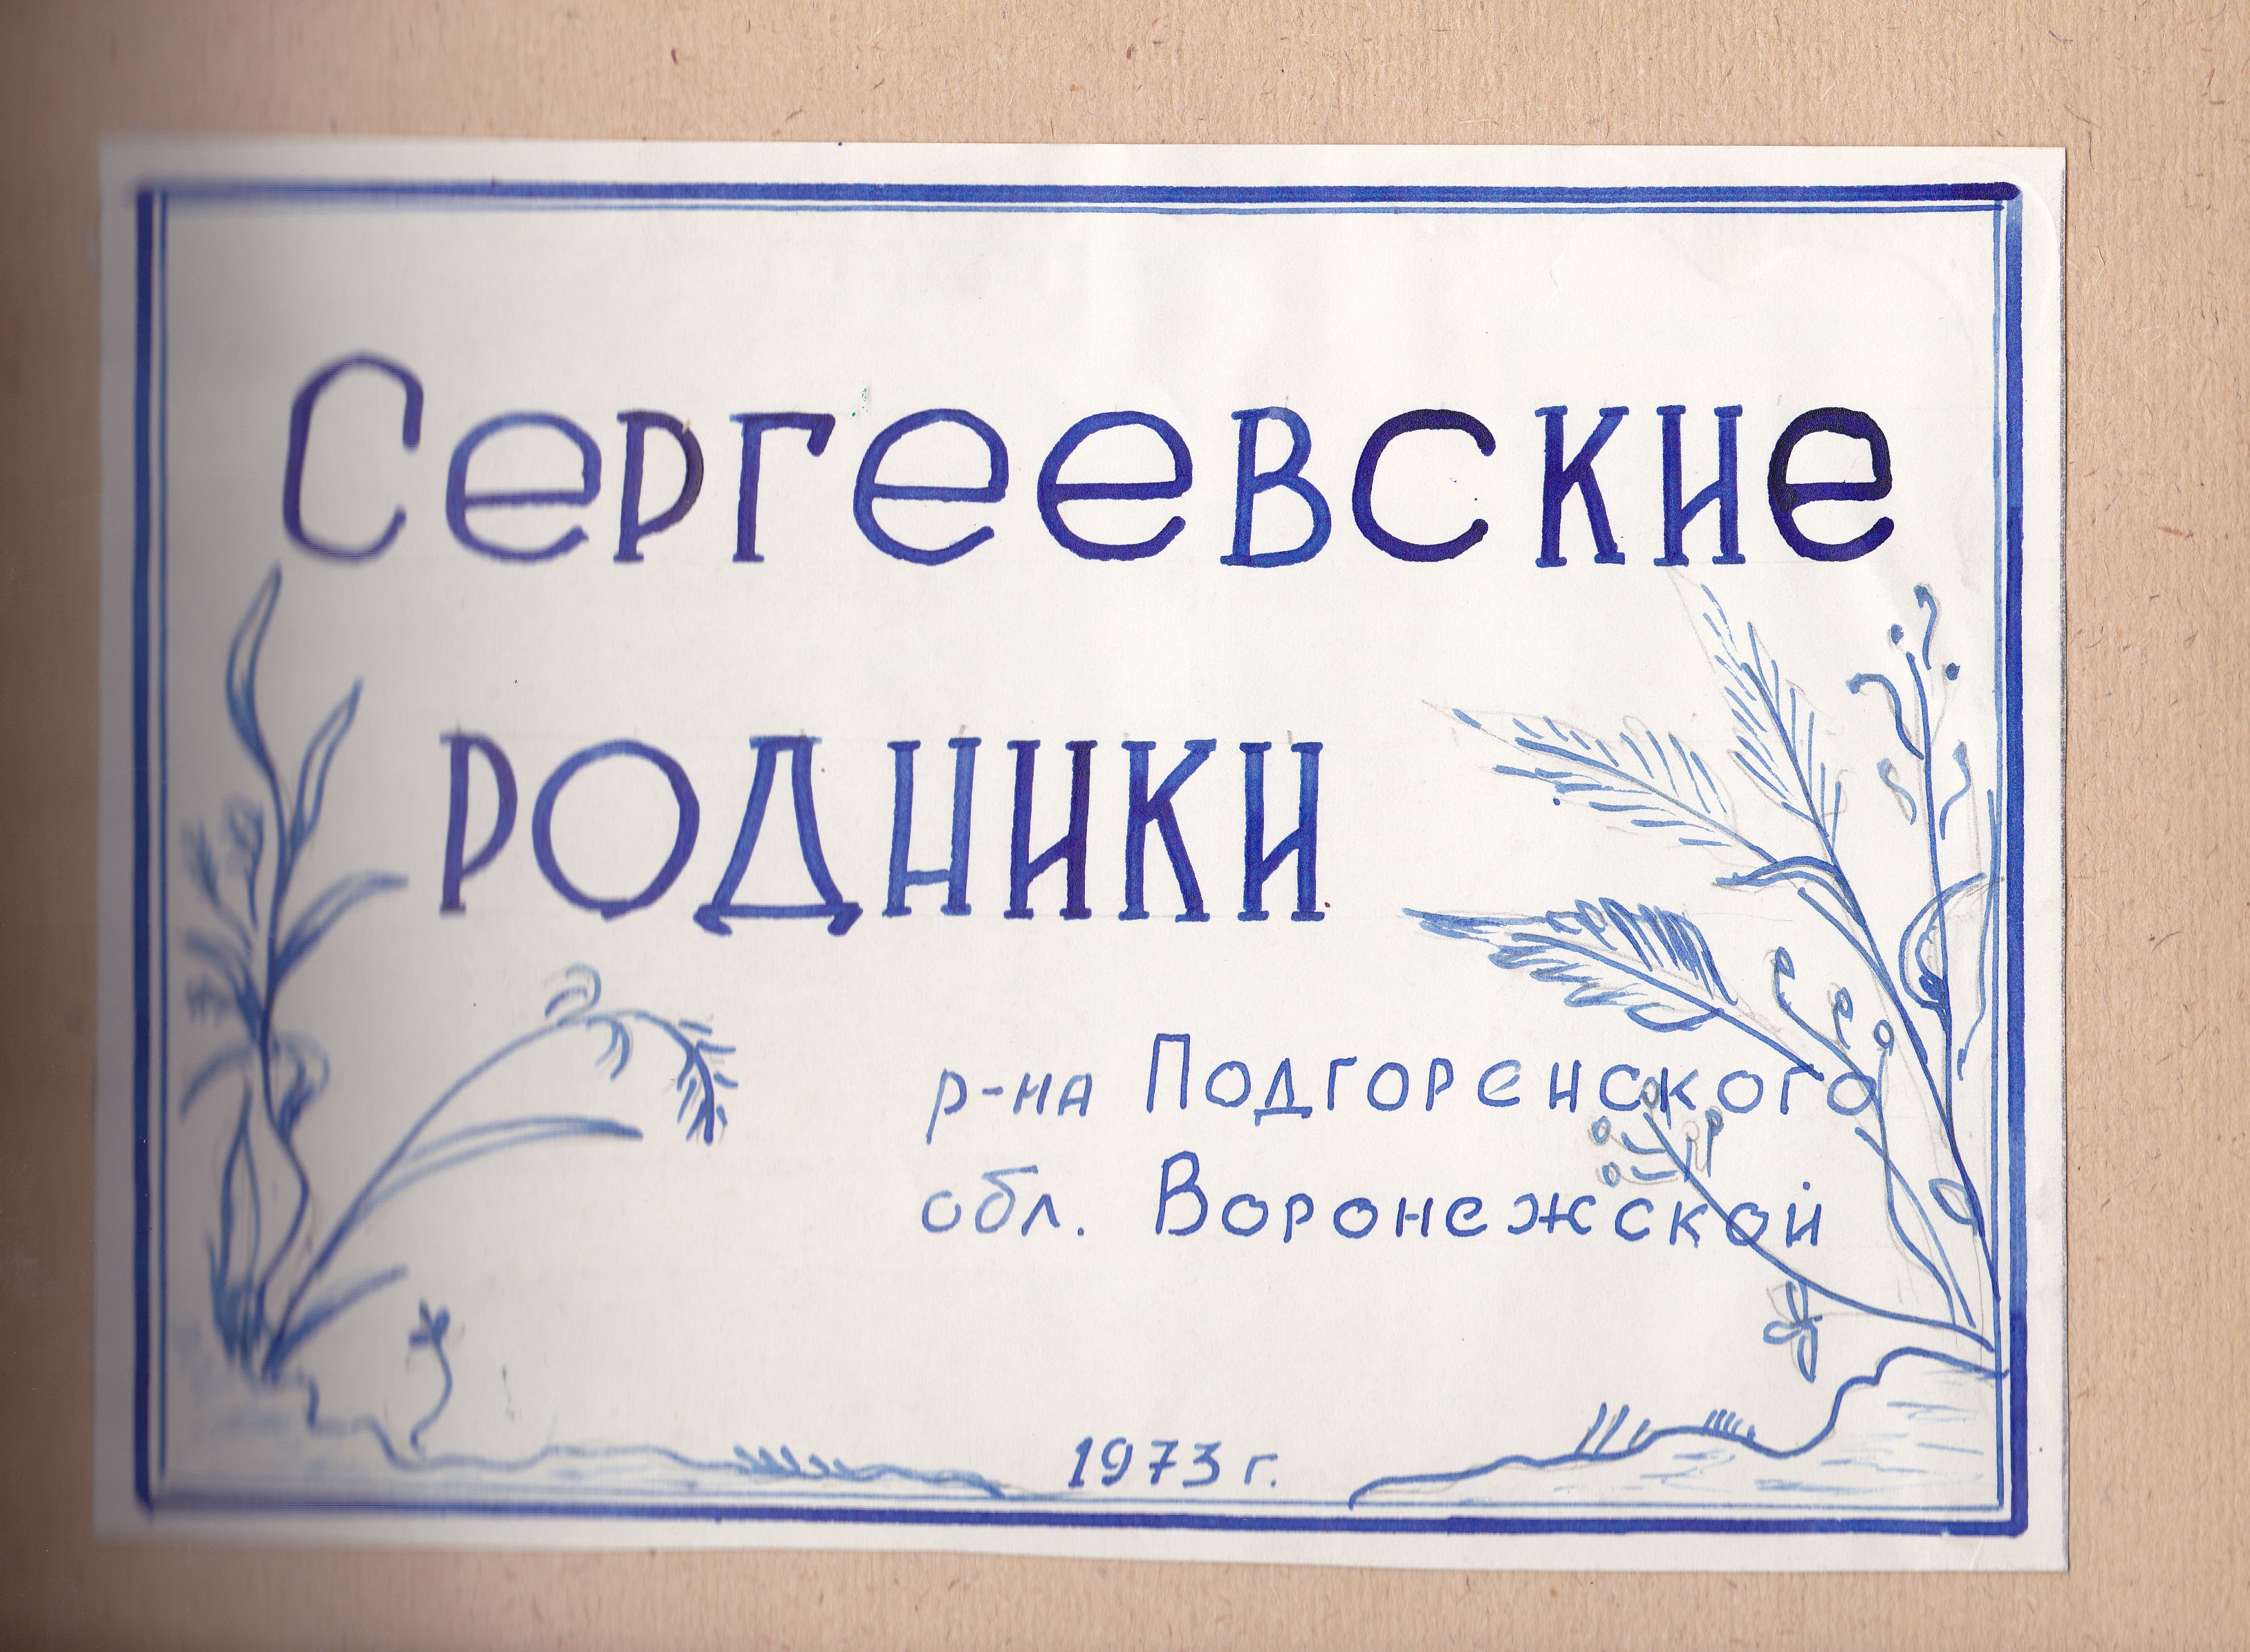 Исследовательская работа о жизни и творчестве поэта Евгения Костюкова